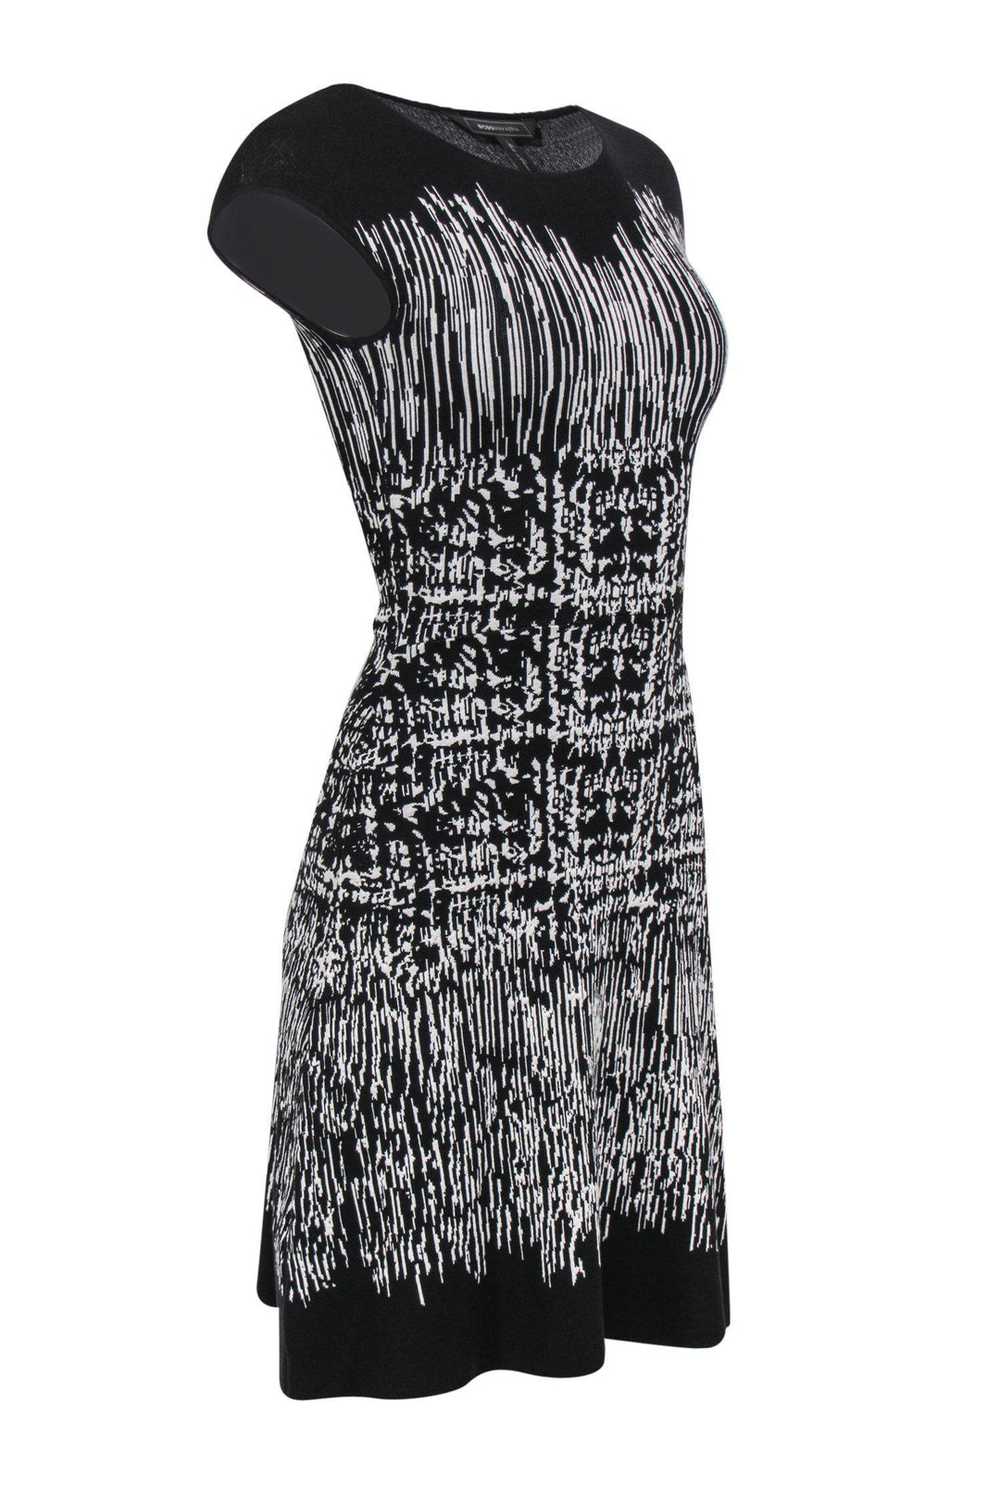 BCBG Max Azria - Black & White Striped Knit Dress… - image 2